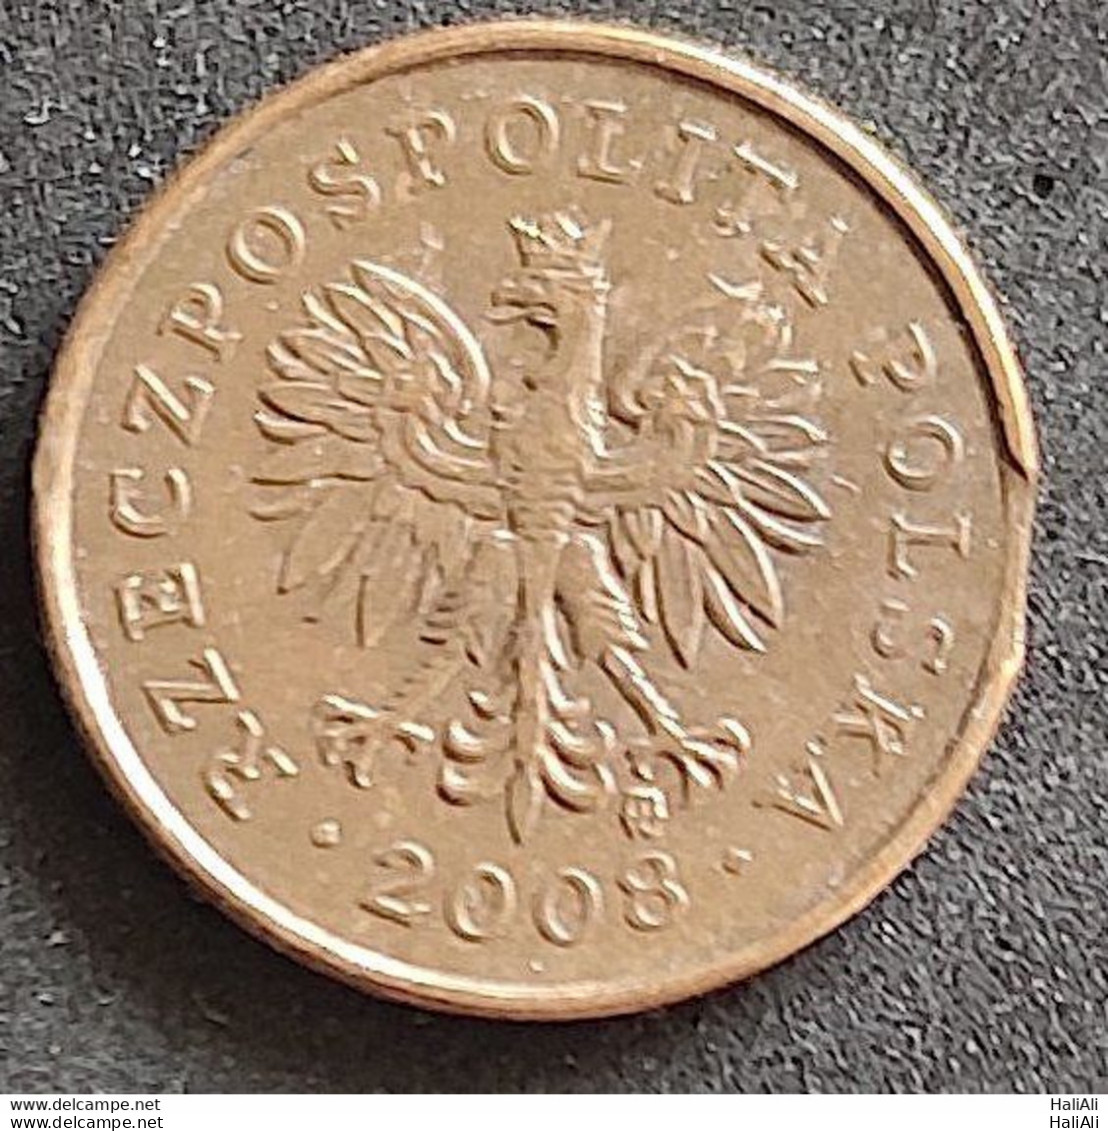 Coin Poland 2008 2 Grosze 1 - Polen